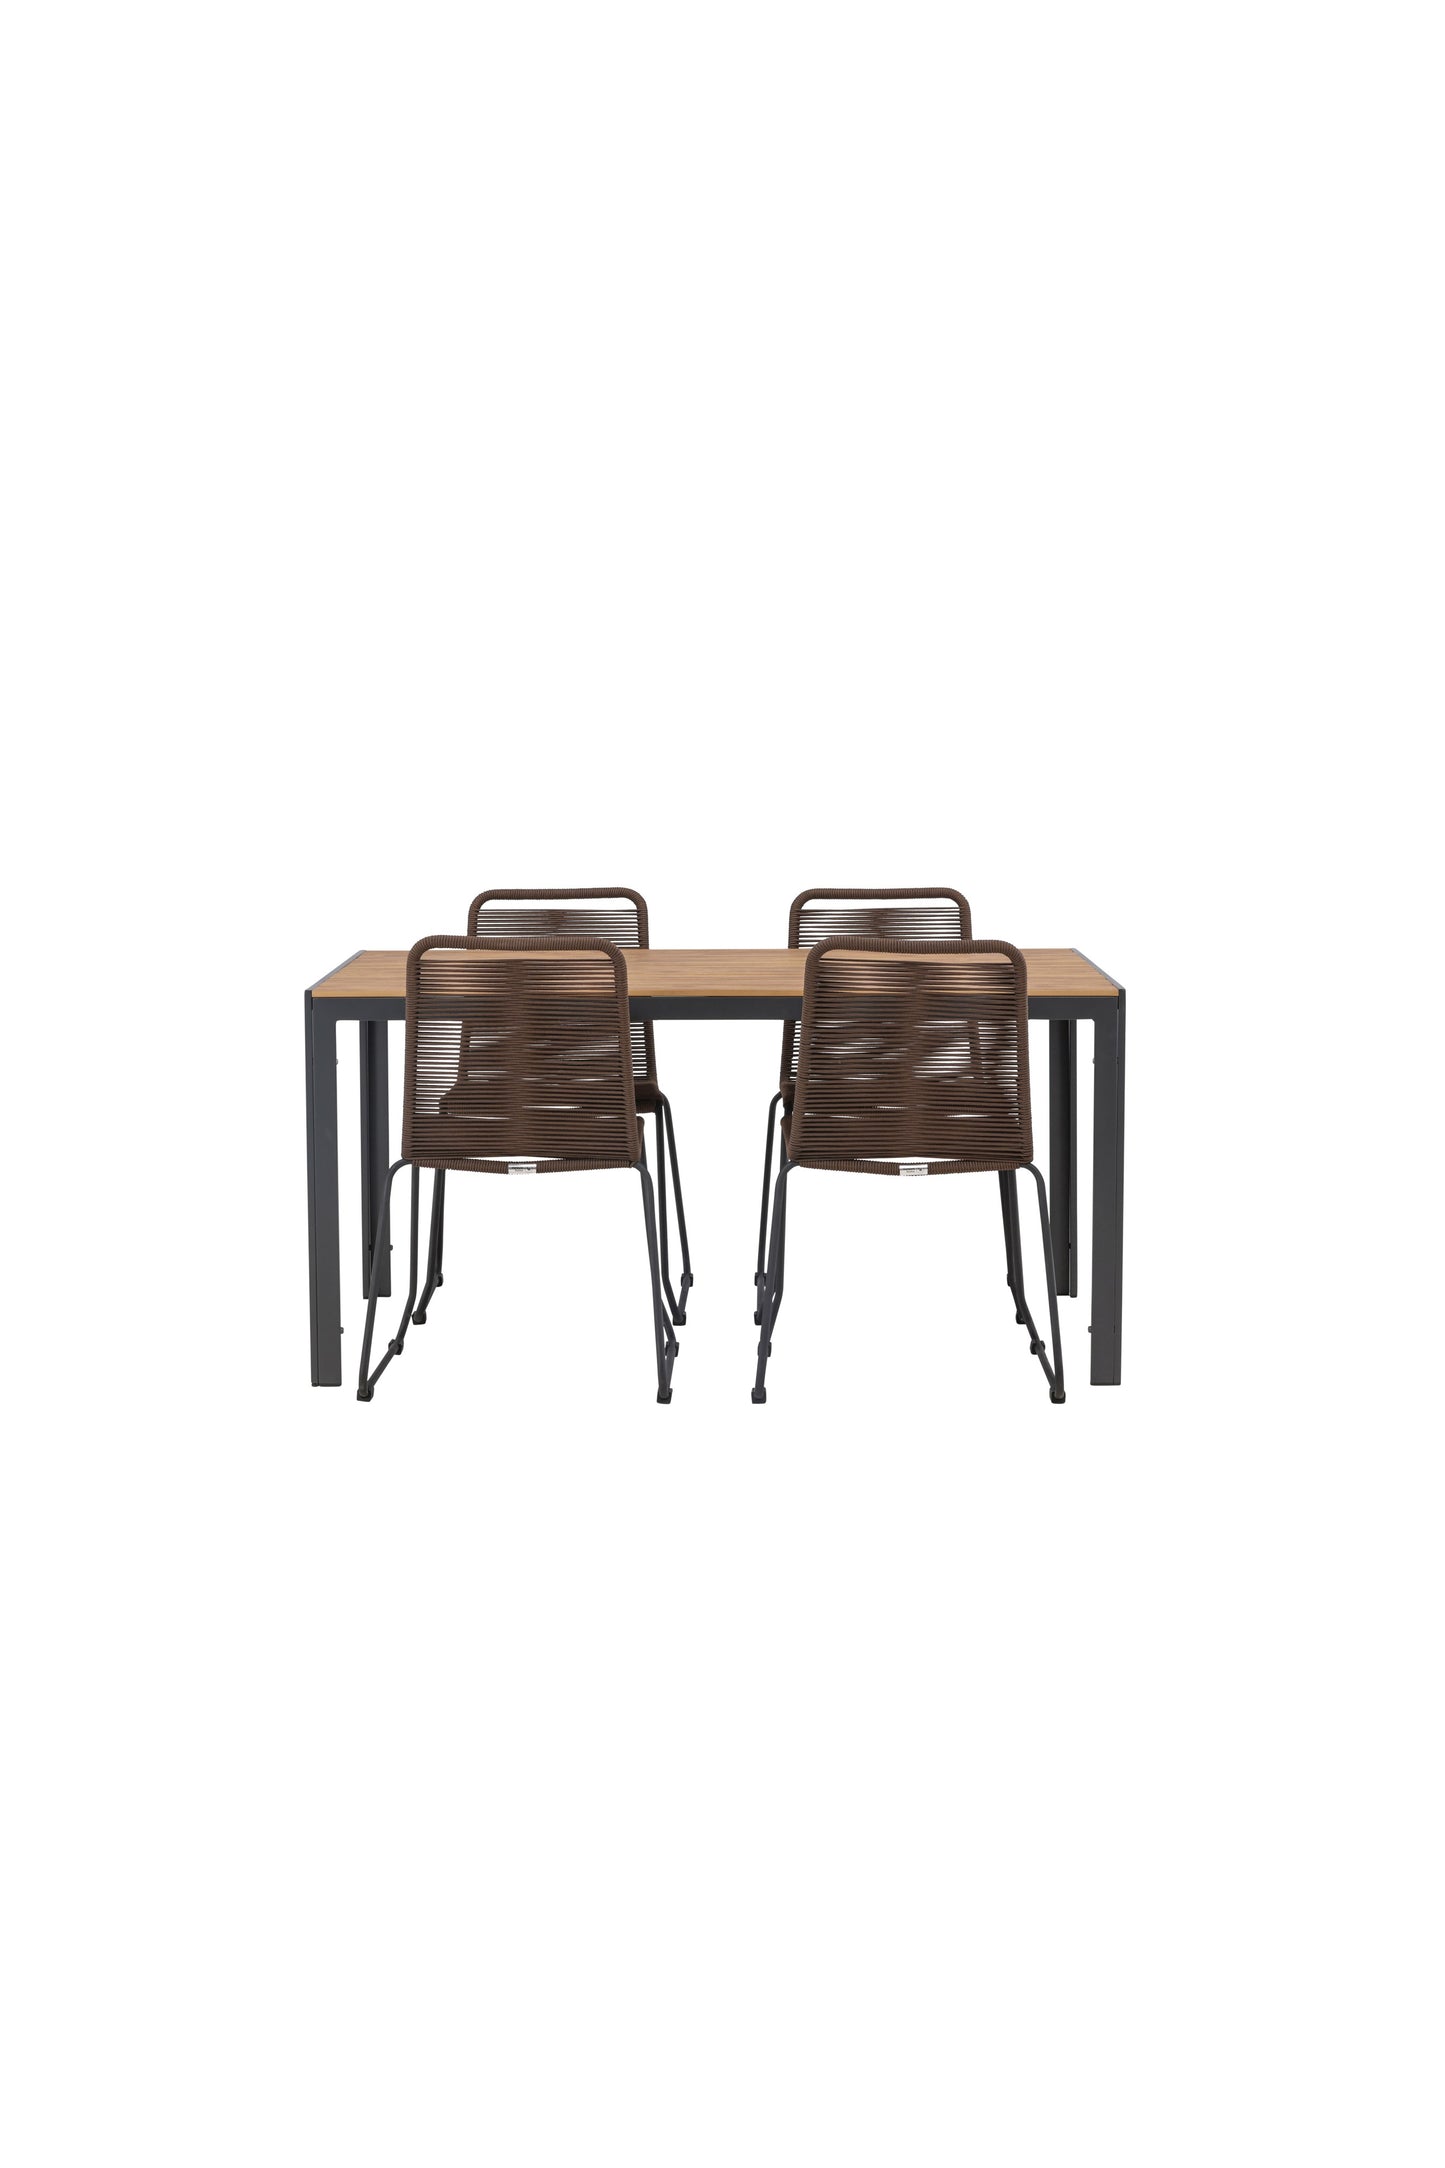 Break - Spisebord, Aluminium - Sort / Natur Rektangulær 90*150* + Lidos stol Aluminium - Sort